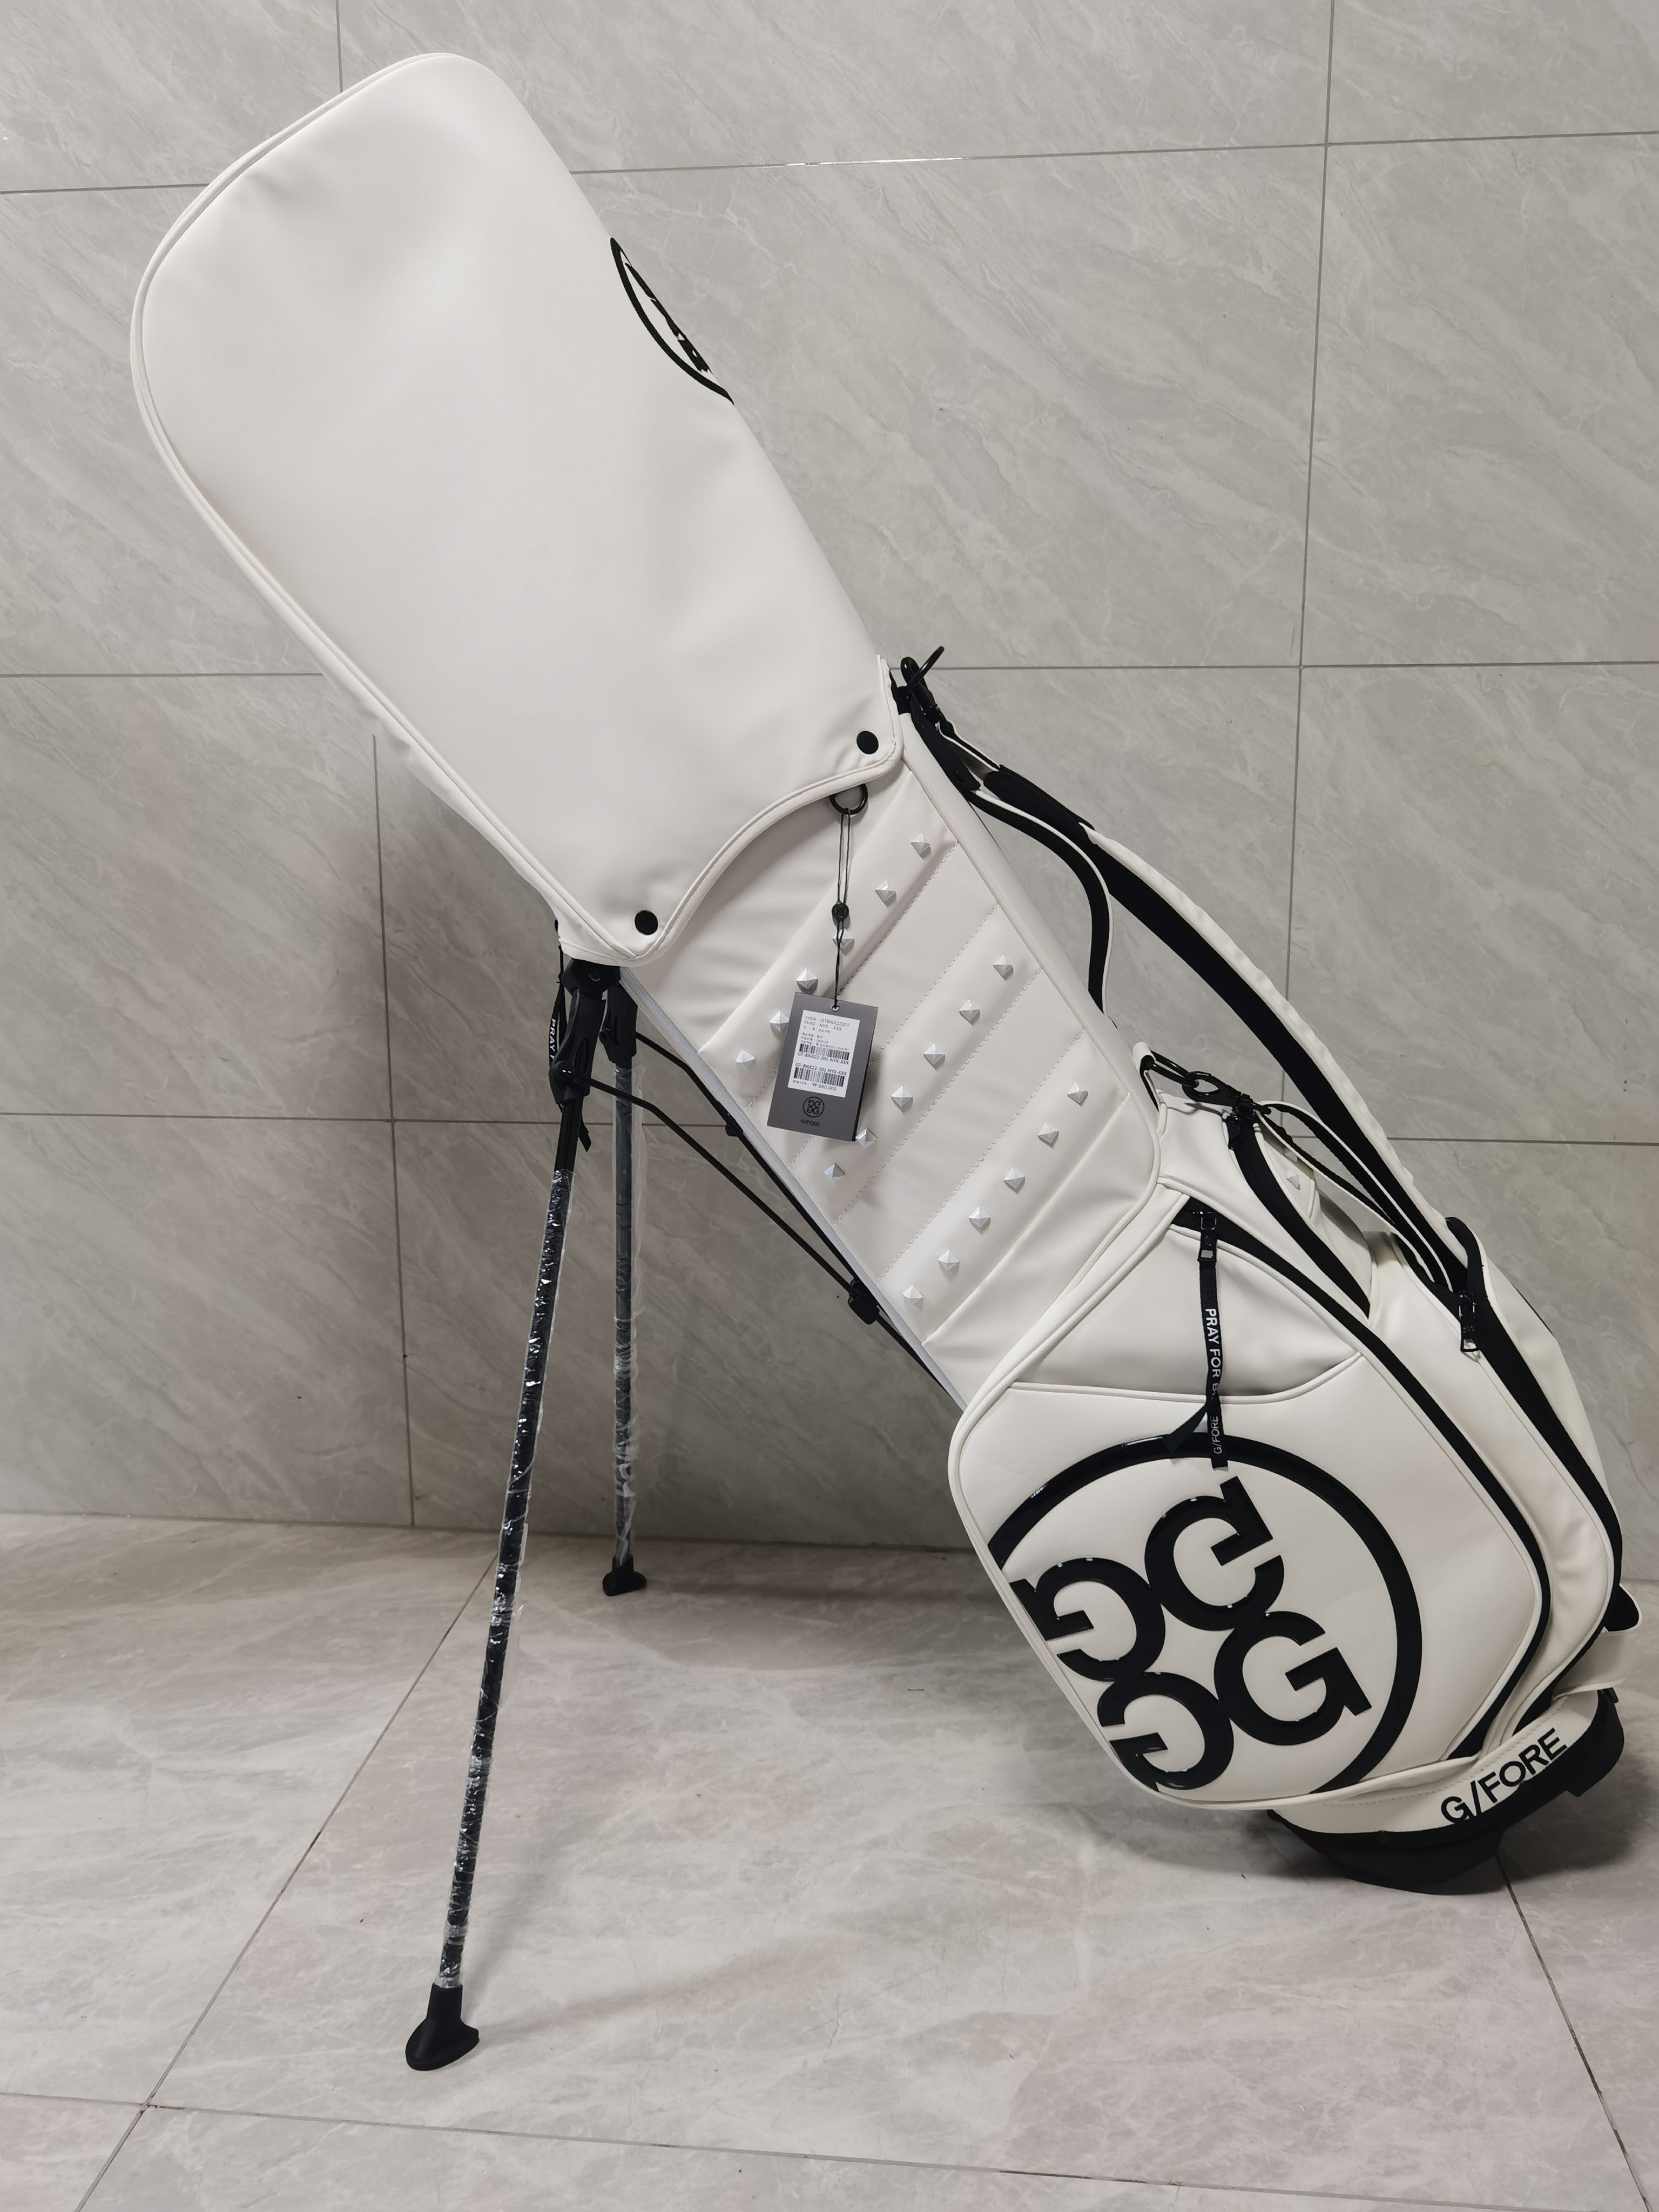 G/FORE ゴルフジーフォア ゴルフバッグ スタンドゴルフバッグ PUレザー キャディバッグ 防水素材 安定感抜群 撥水性 高耐久 レディース  メンズ ホワイト